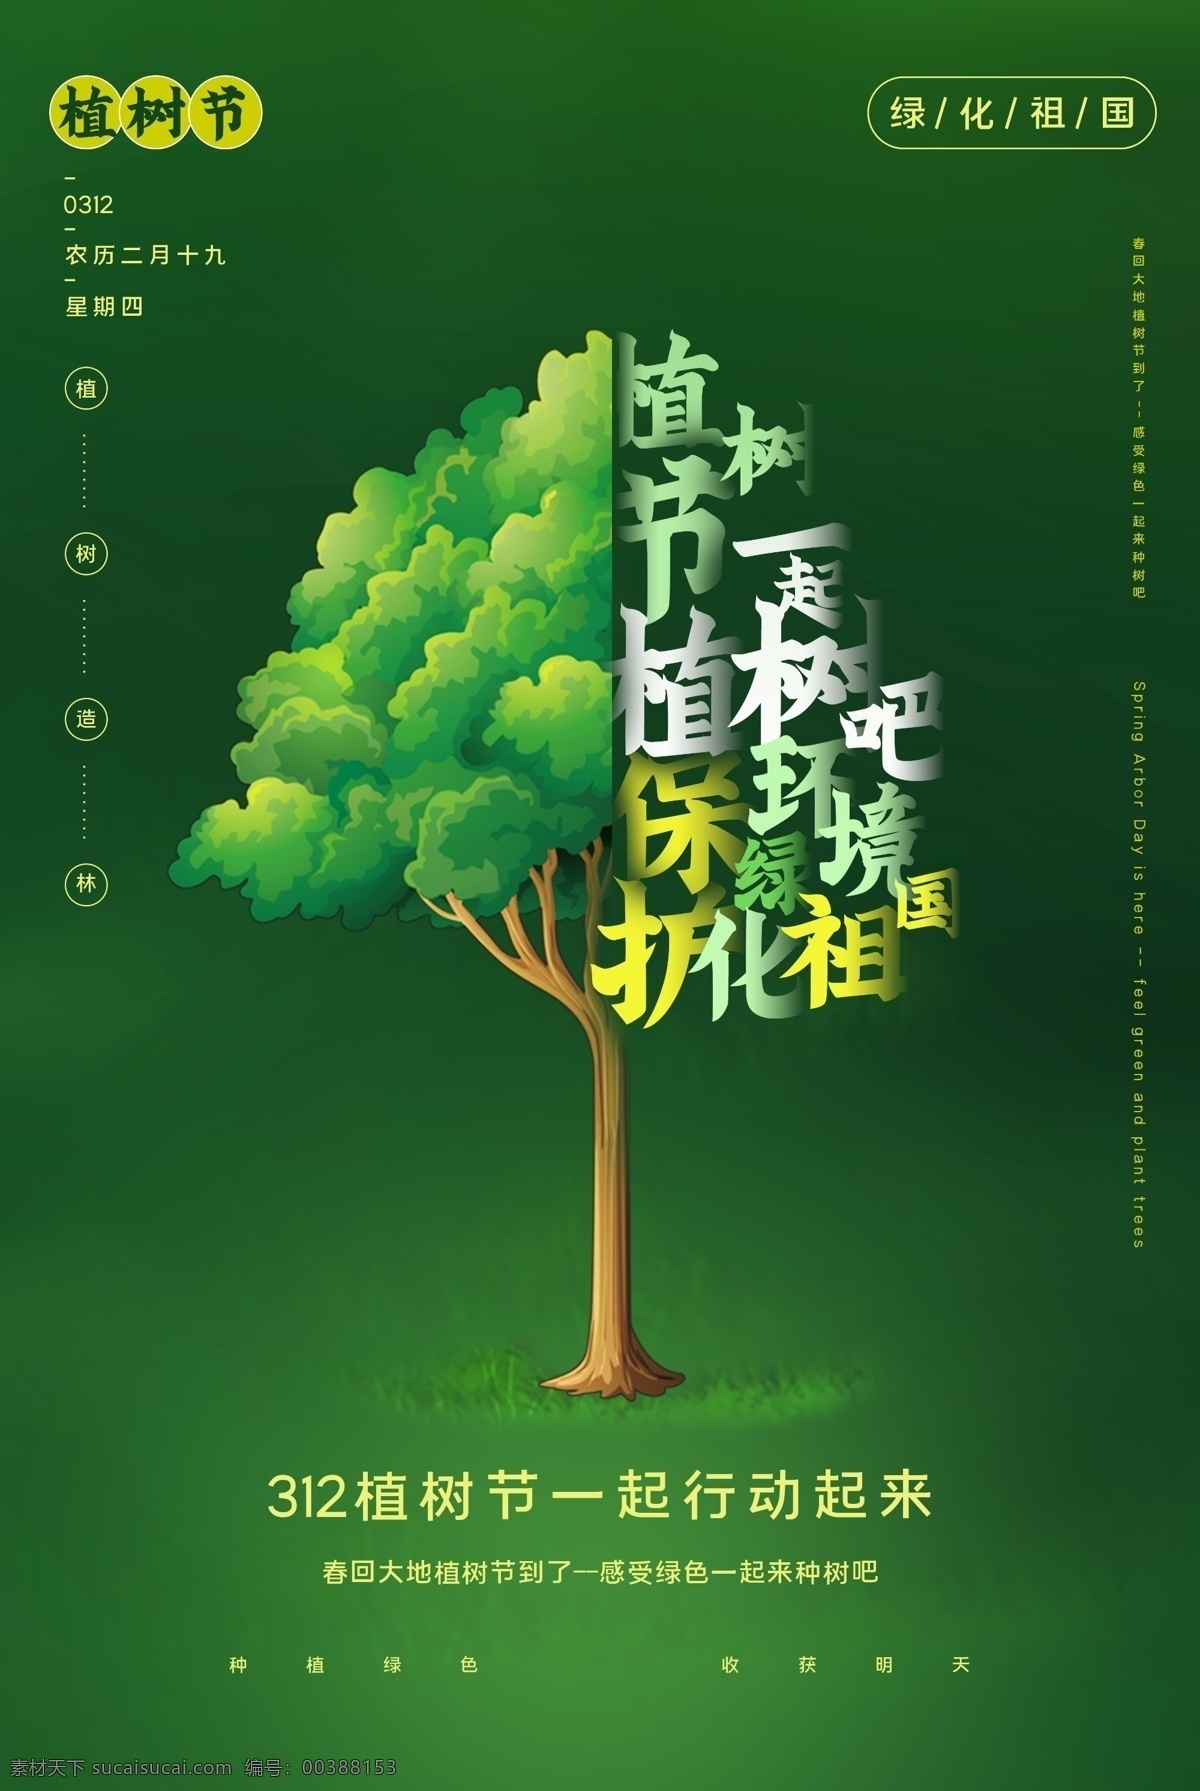 植树节 节日 社会 公益 海报 素材图片 传统节日